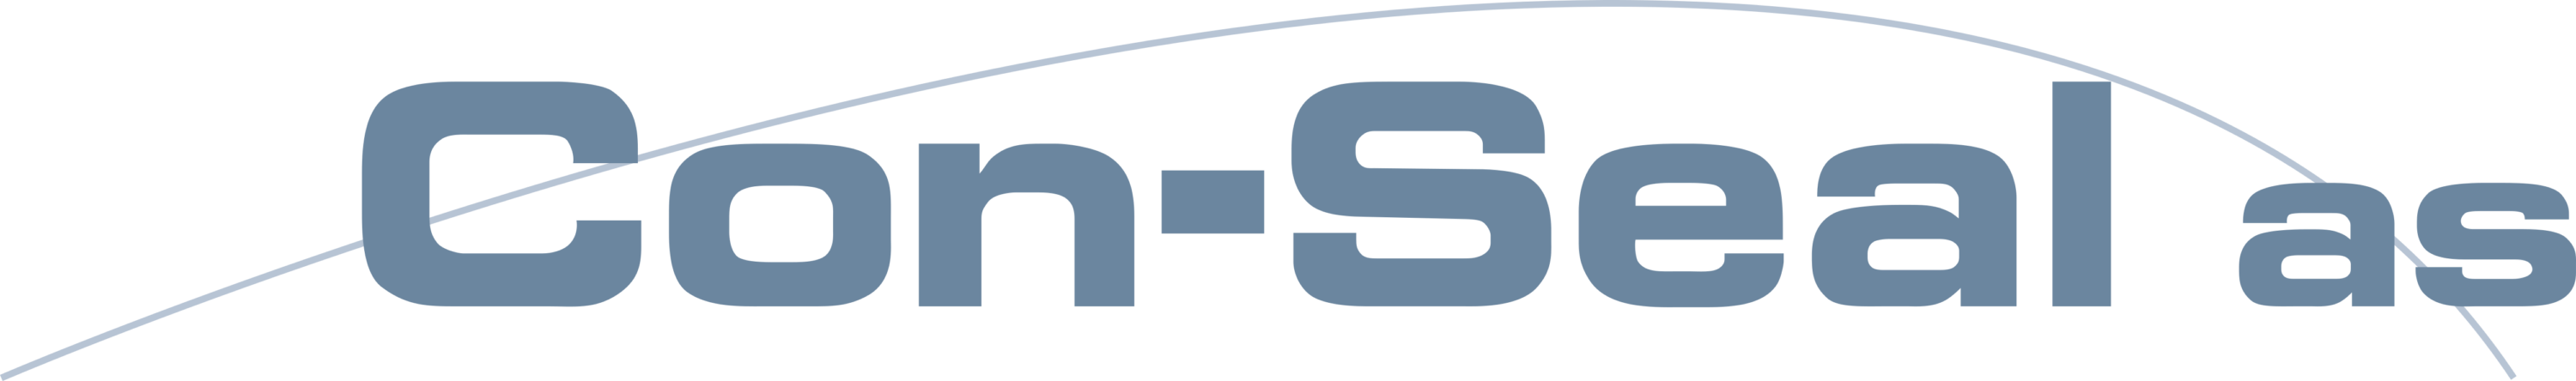 Con Seal AS Logo